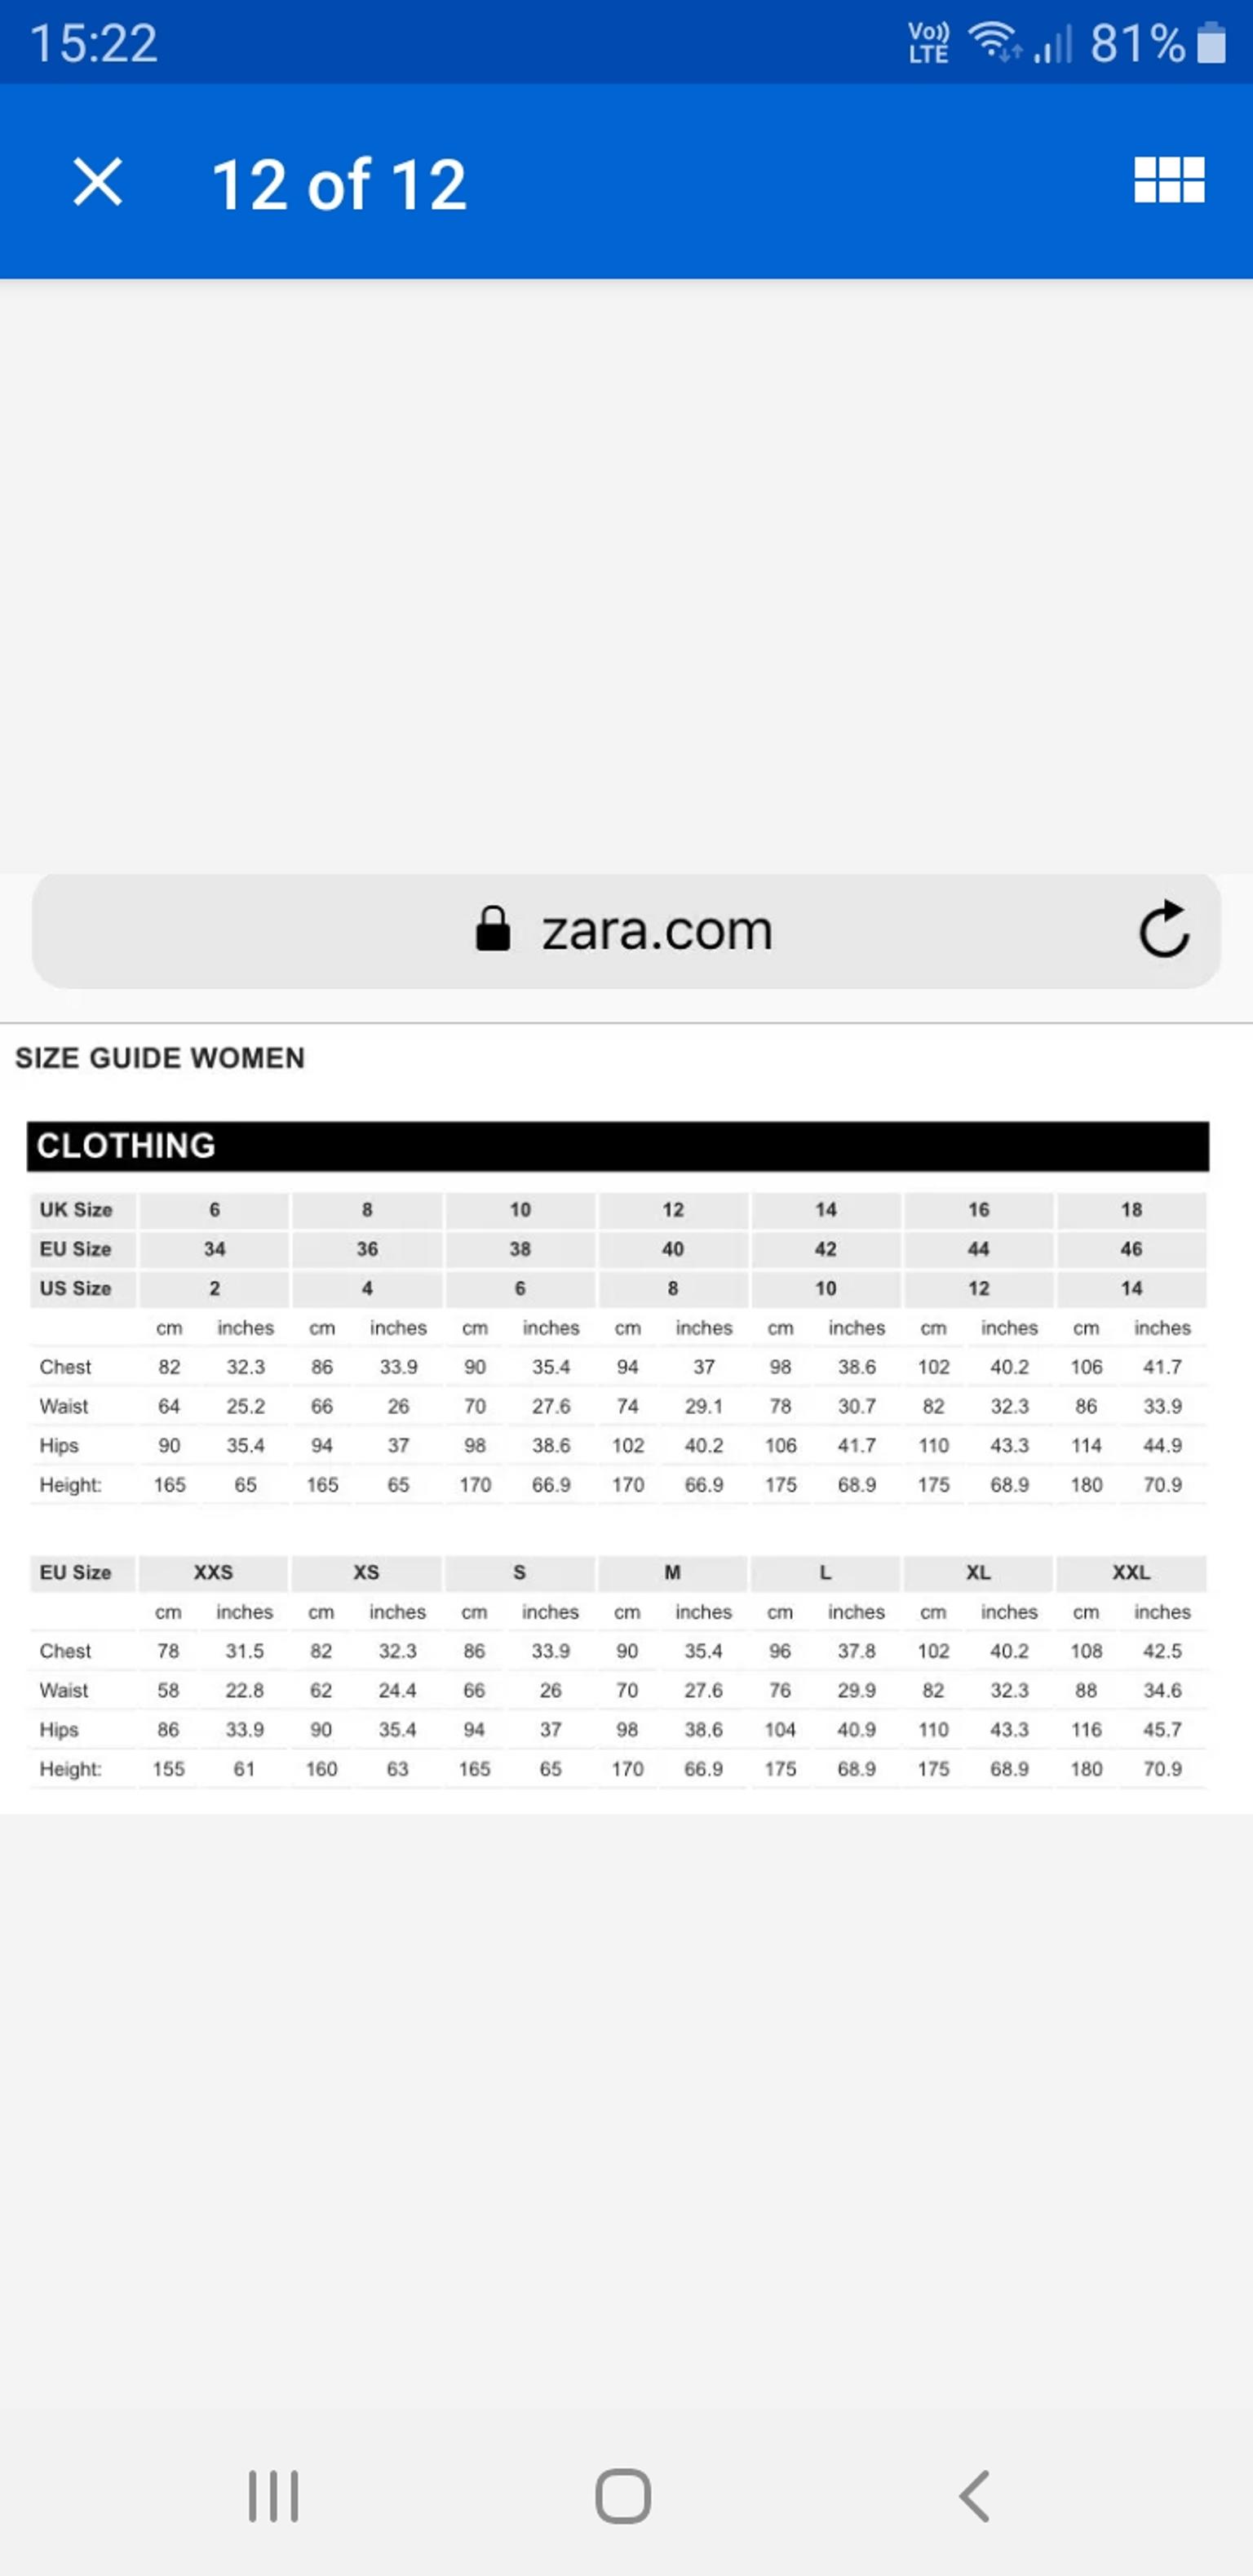 what size is zara xxl